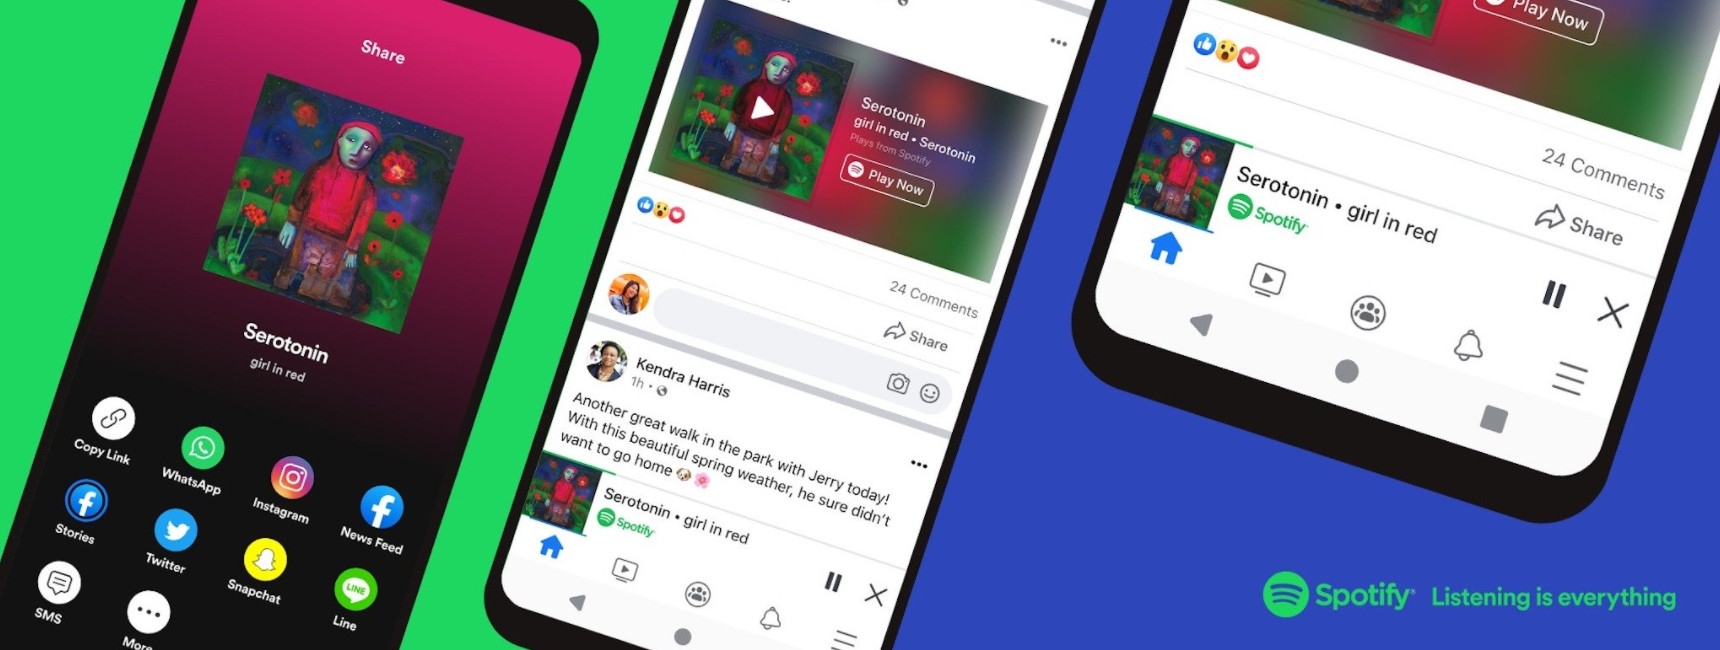 Spotify nghe trực tiếp từ Facebook mà không cần mở ứng dụng